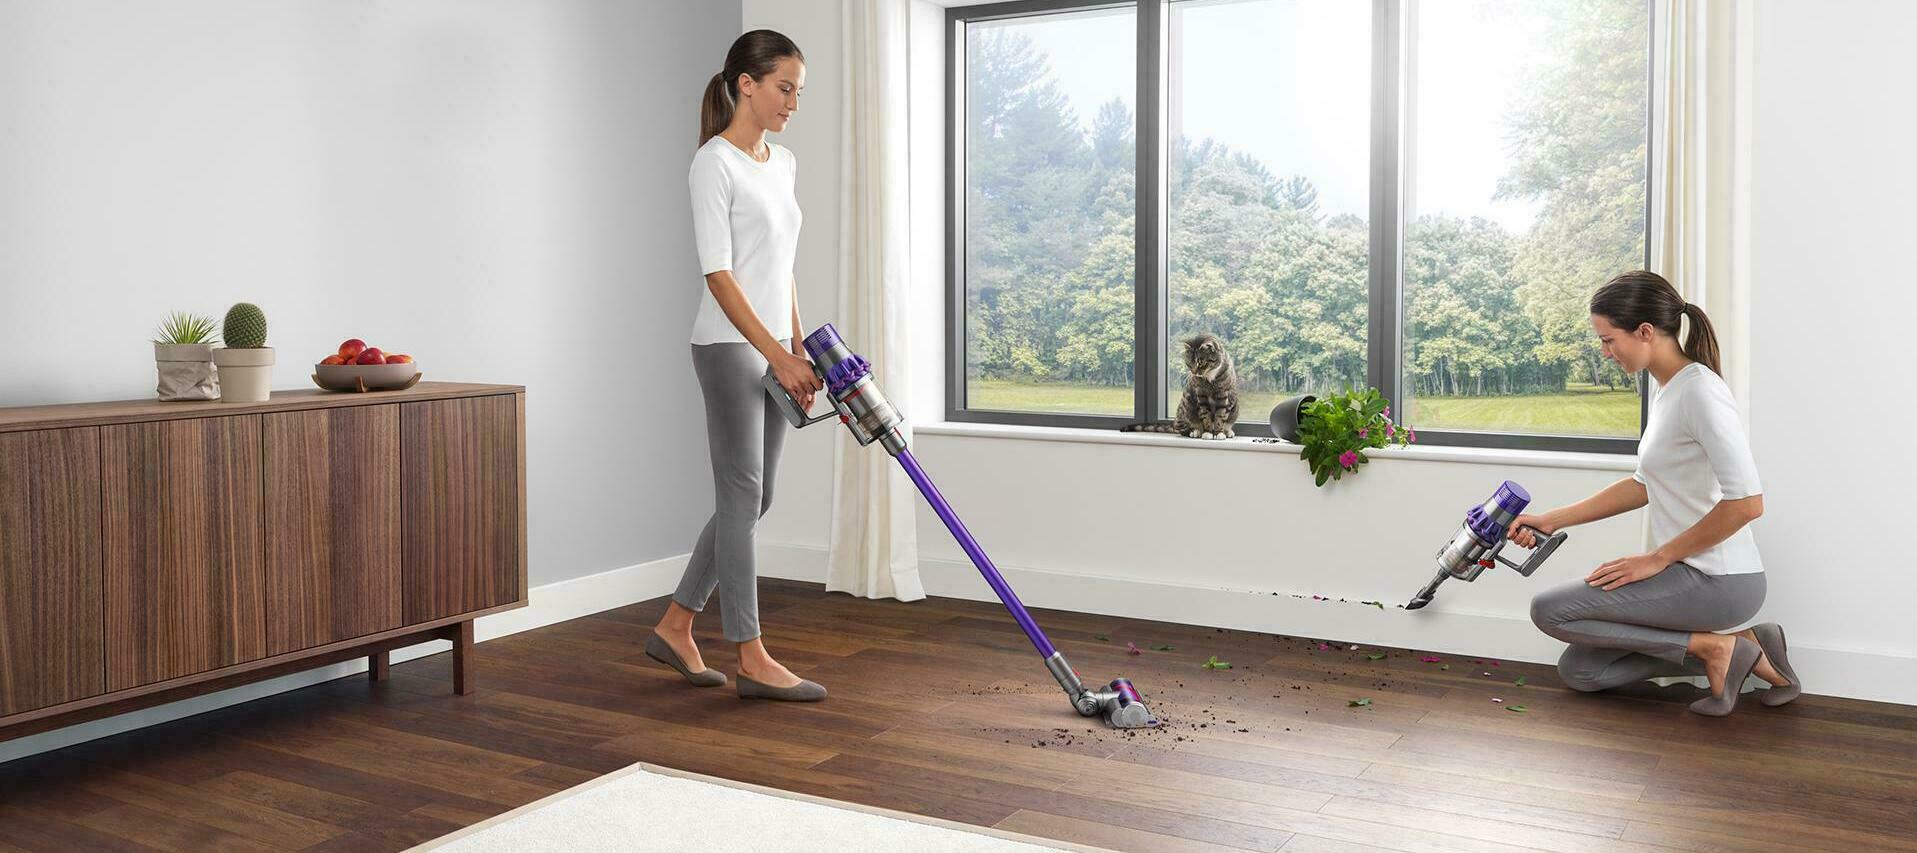 Come pulire le aree comuni della vostra casa - Come pulire il soggiorno